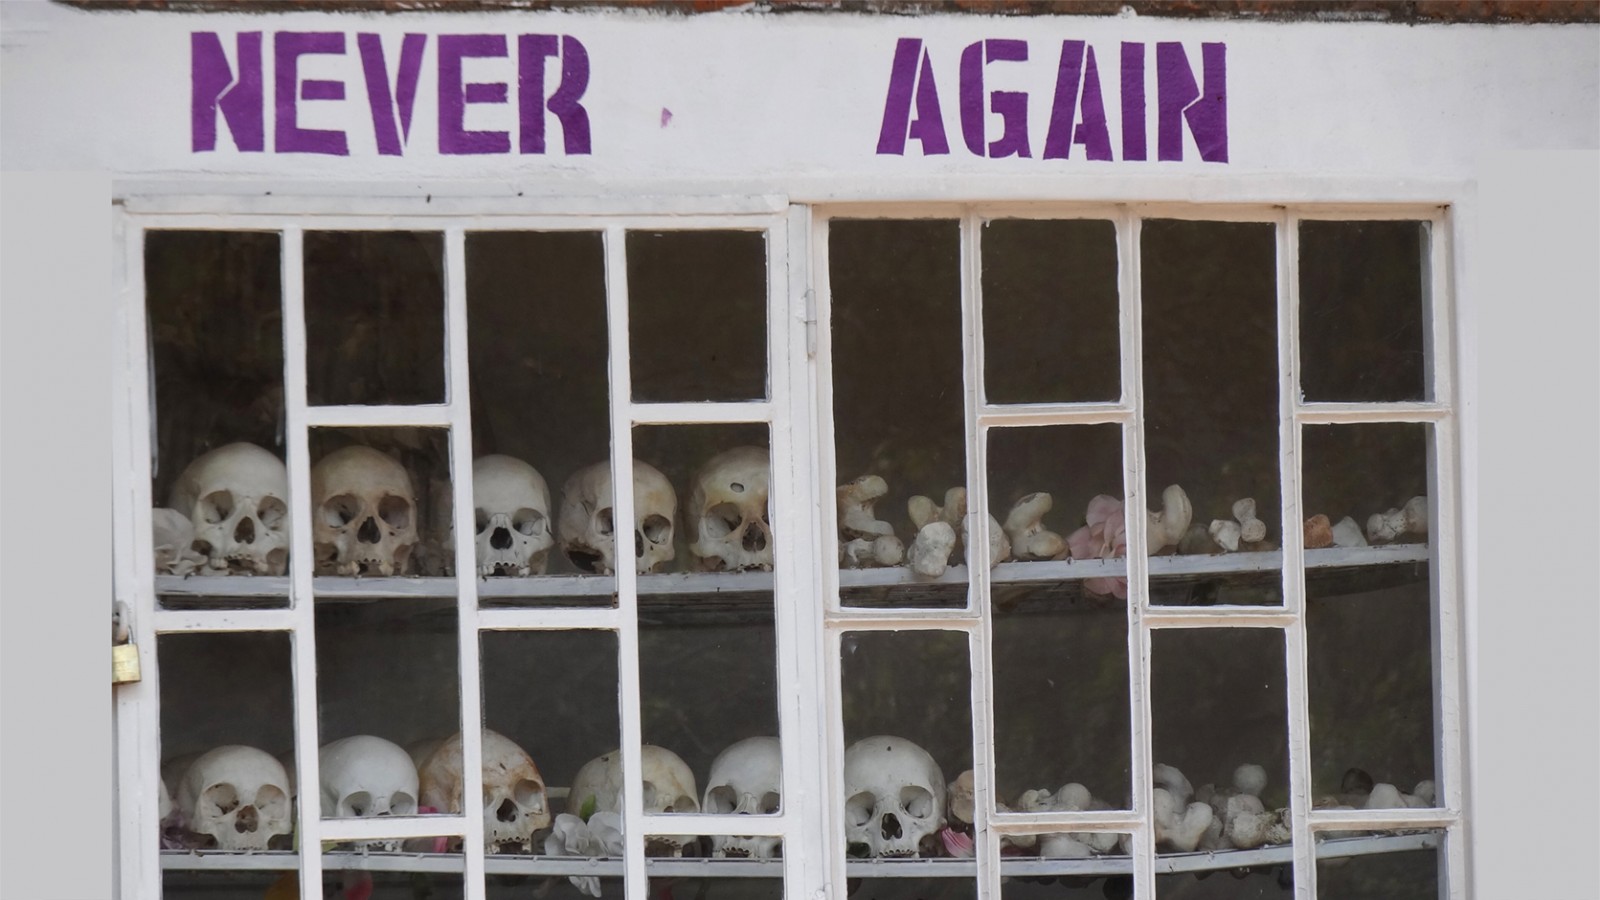 הבטחת העולם כי לעולם לא עוד &#8211; רחוקה מהגשמה. אנדרטה לרצח העם ברואנדה (צילום: Adam Jones, Ph.D ויקימדיה)